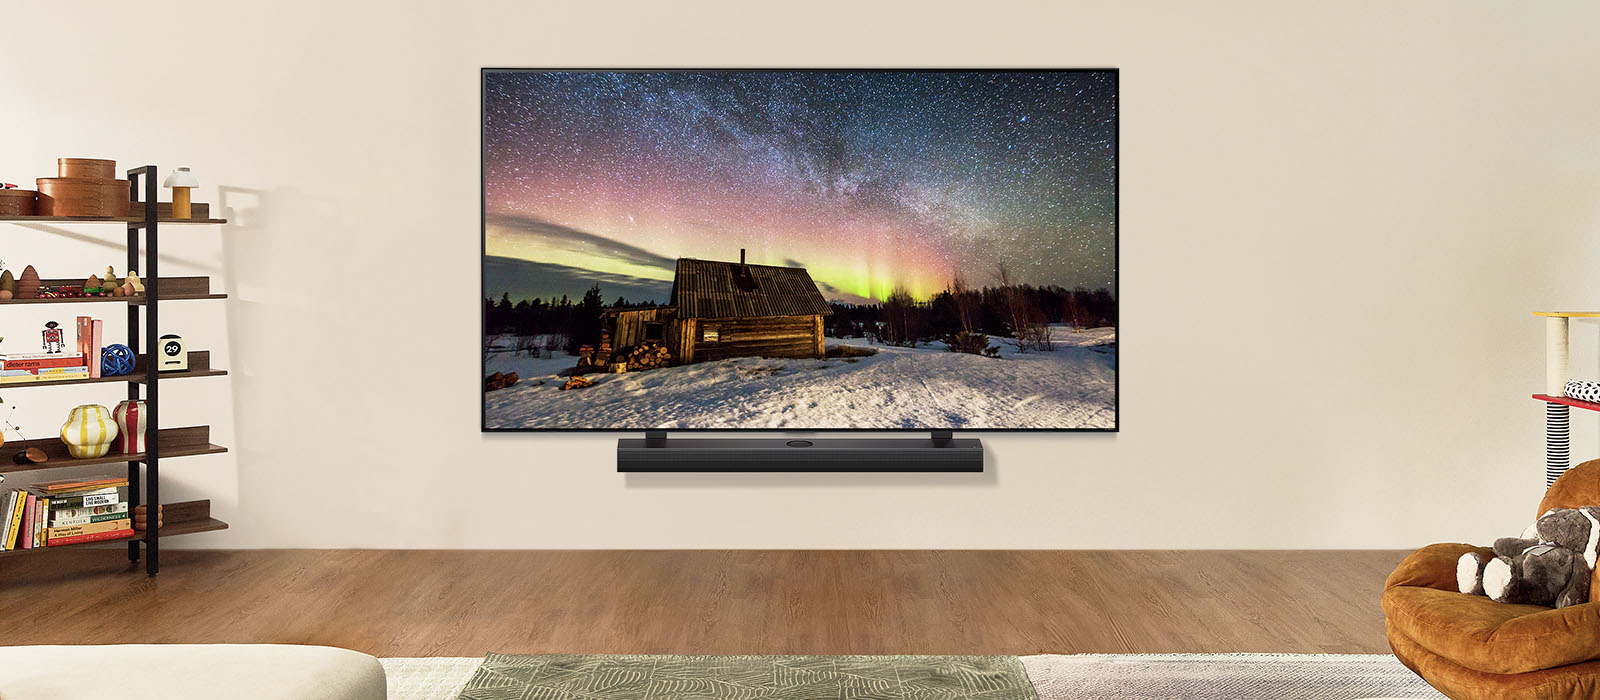 LG OLED TV ja LG ribakõlar päevasel ajal tänapäevases eluruumis. Virmaliste ekraanipilt kuvatakse ideaalsete heledustasemetega.